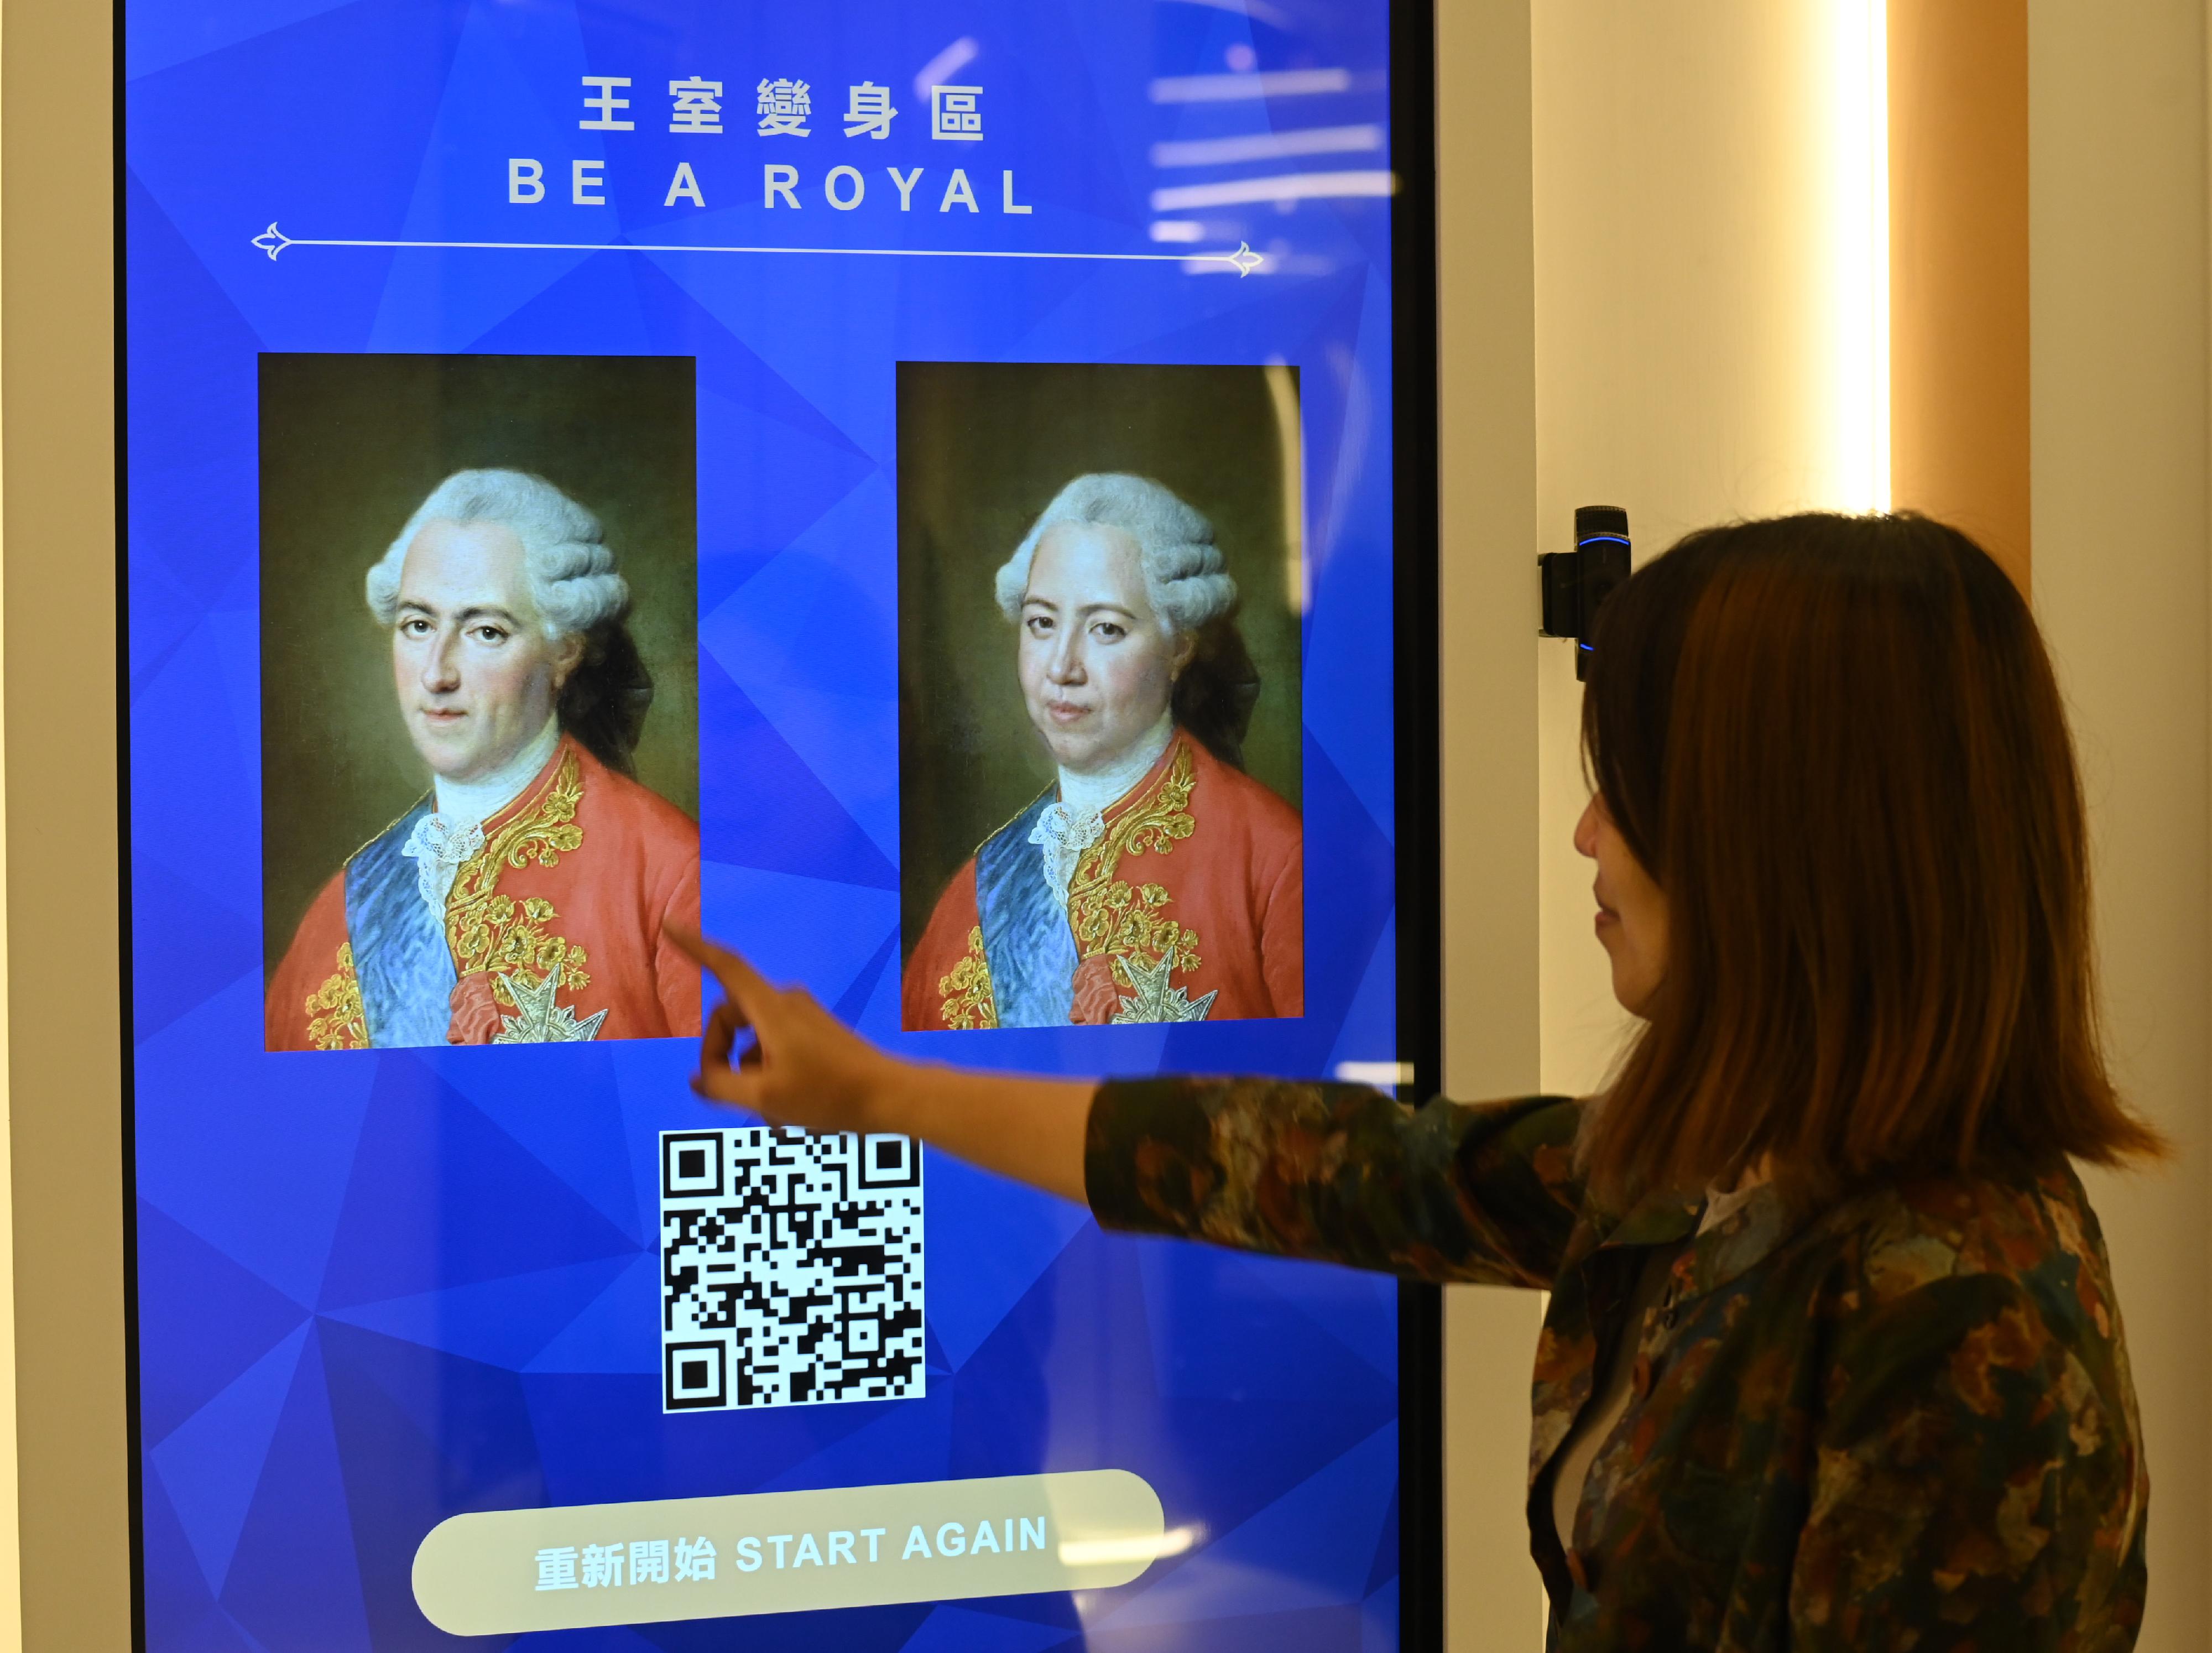 「虚拟凡尔赛宫之旅」展览开幕典礼今日（四月十九日）在香港文化博物馆举行。图示「王室变身区」游戏，让观众摇身一变成为王室名人。